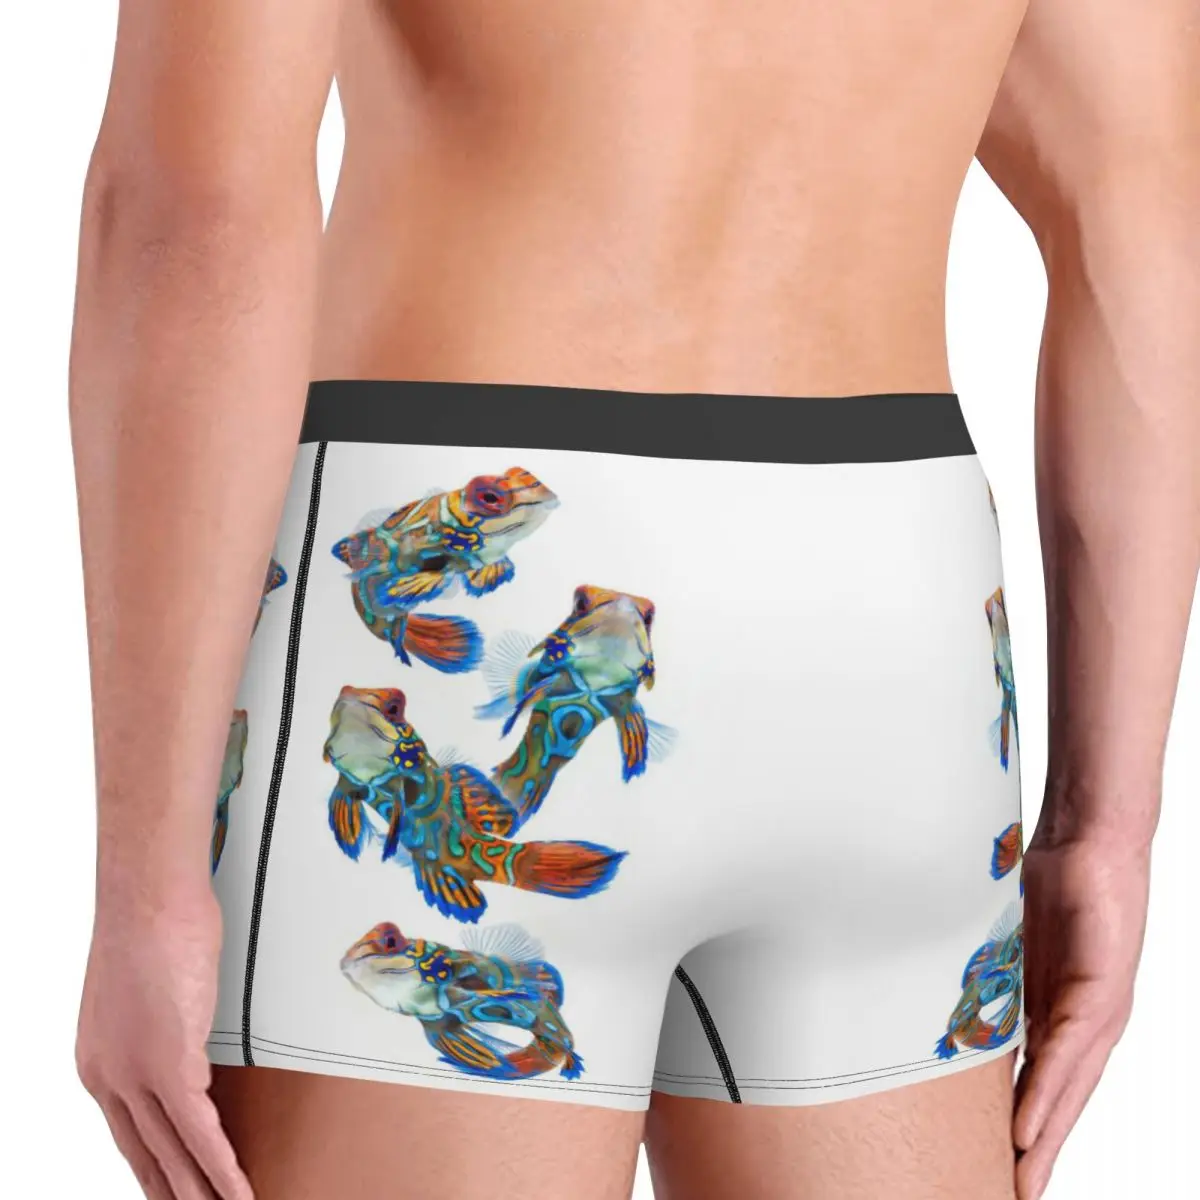 Celana Boxer pria berbagai warna motif ikan tropis, celana dalam motif 3D, hadiah ulang tahun Kualitas Terbaik sangat bersirkulasi